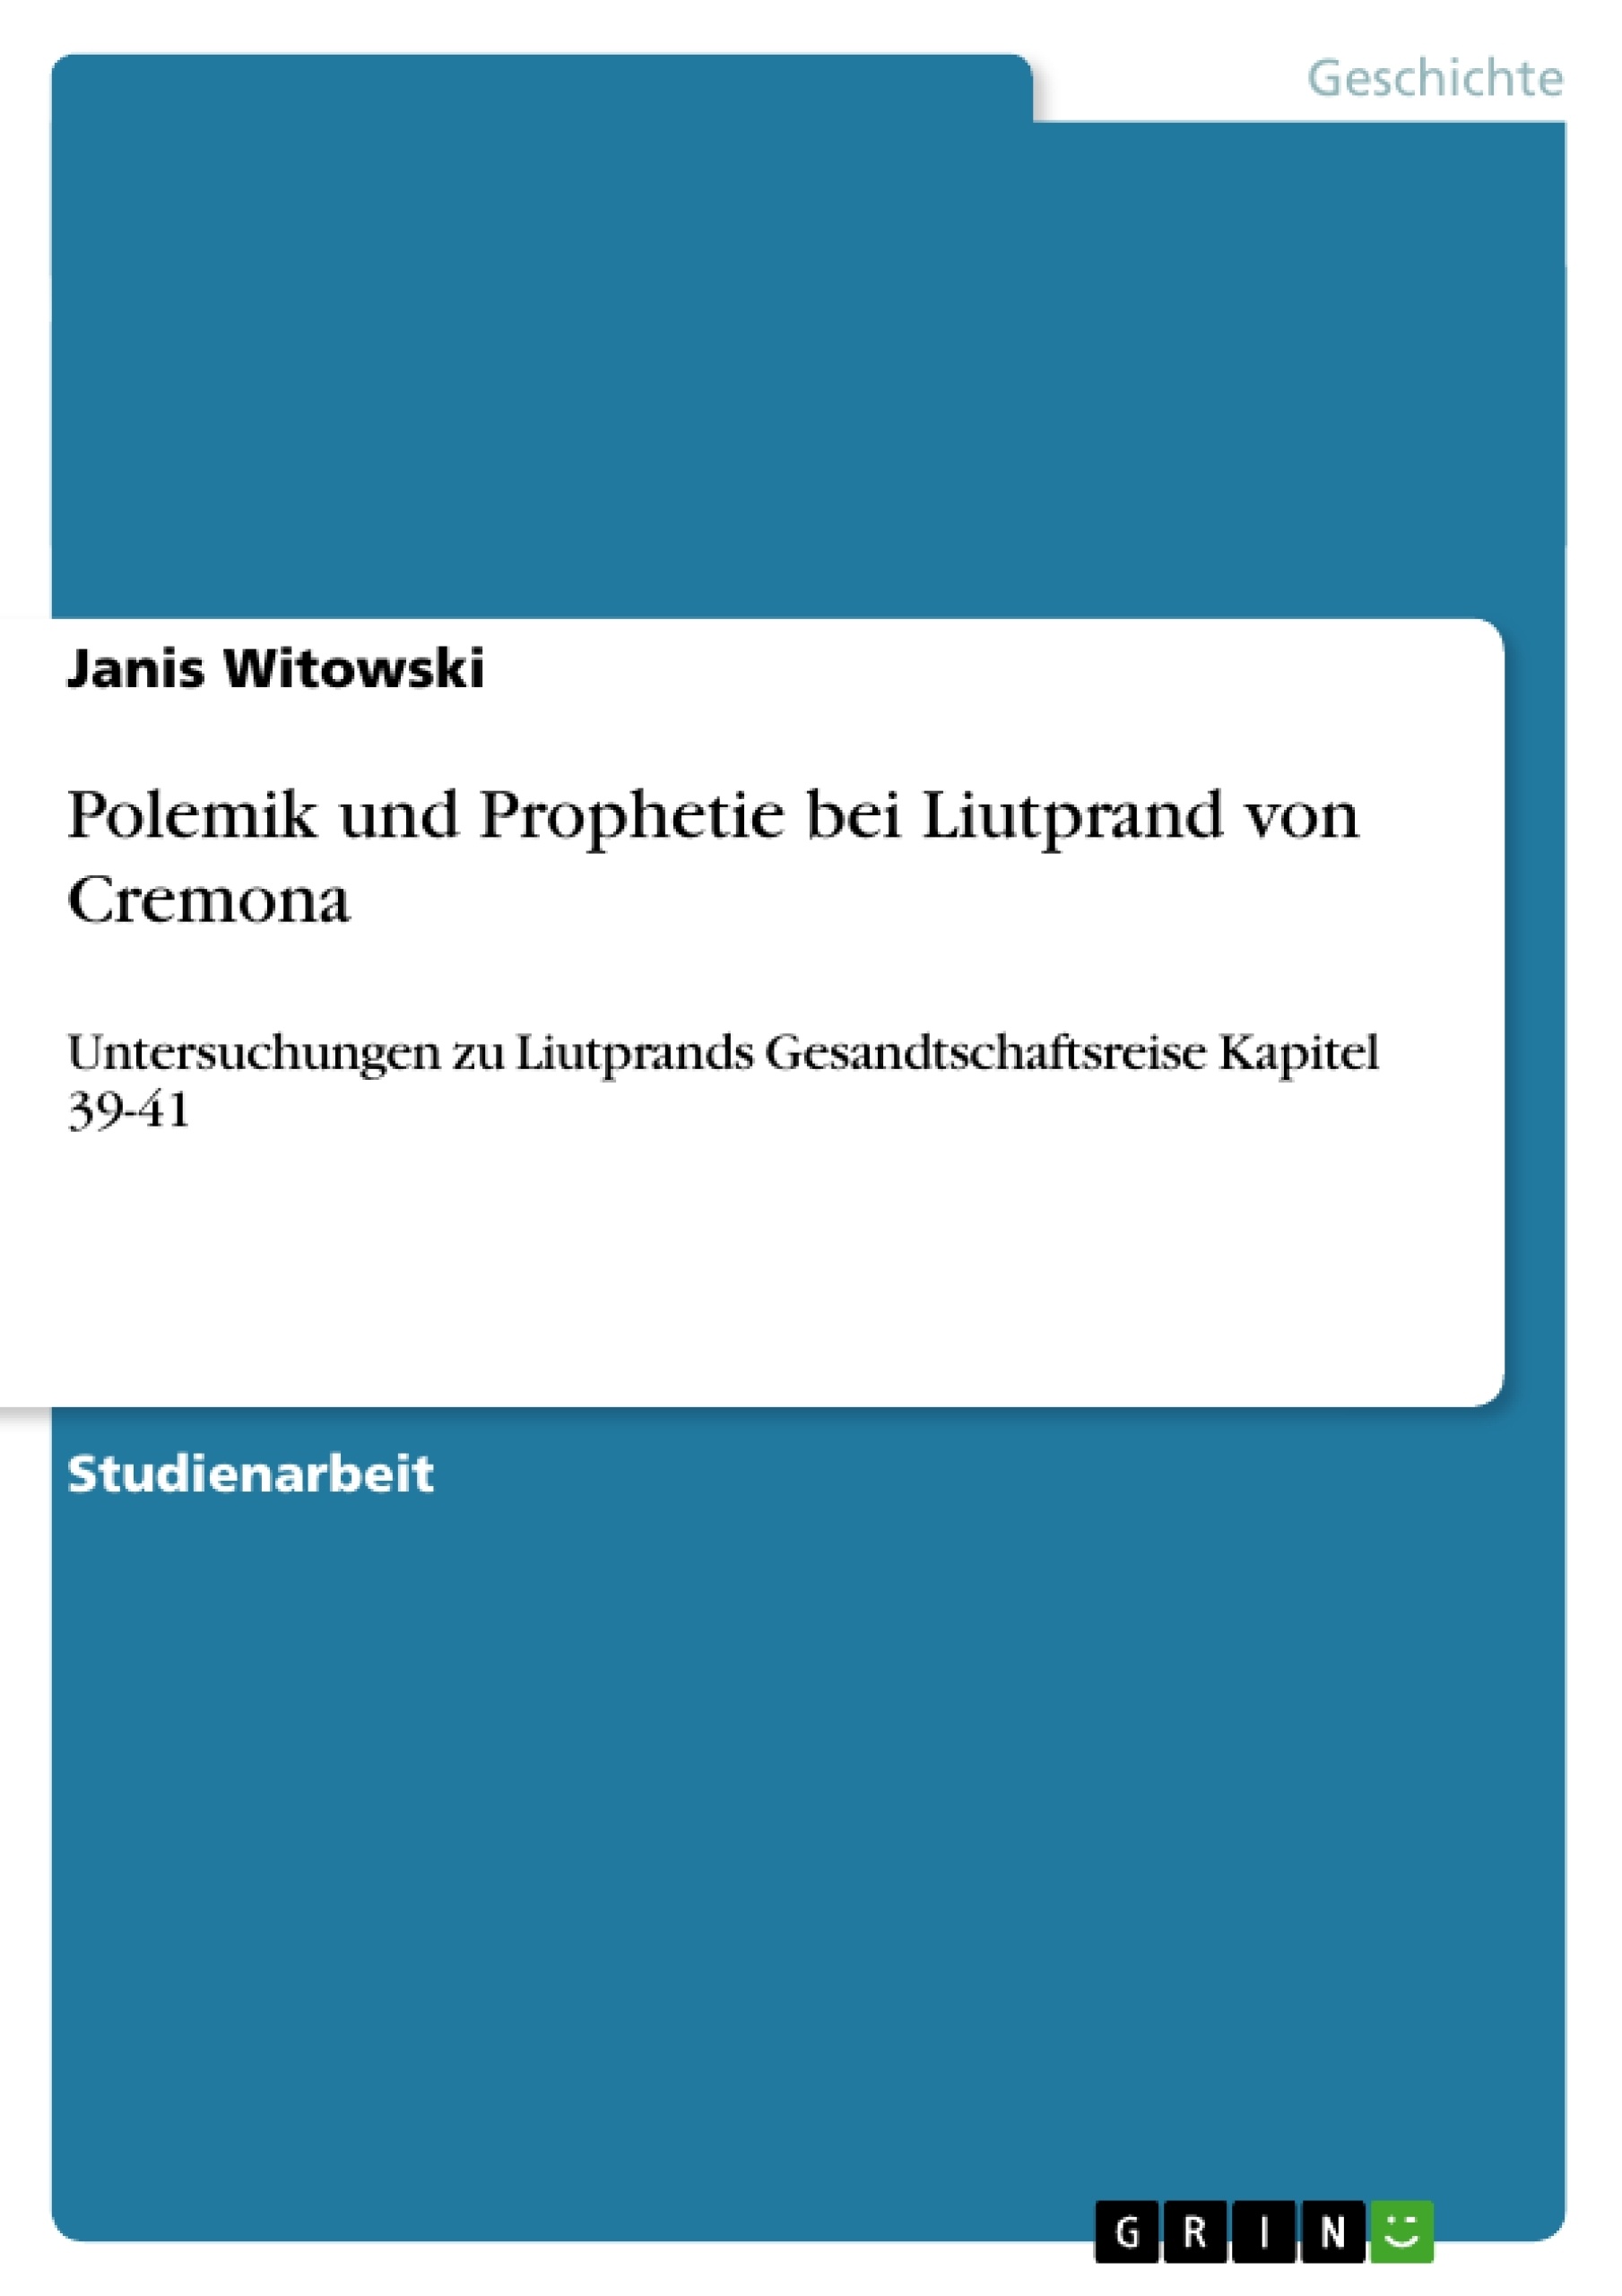 Título: Polemik und Prophetie bei Liutprand von Cremona